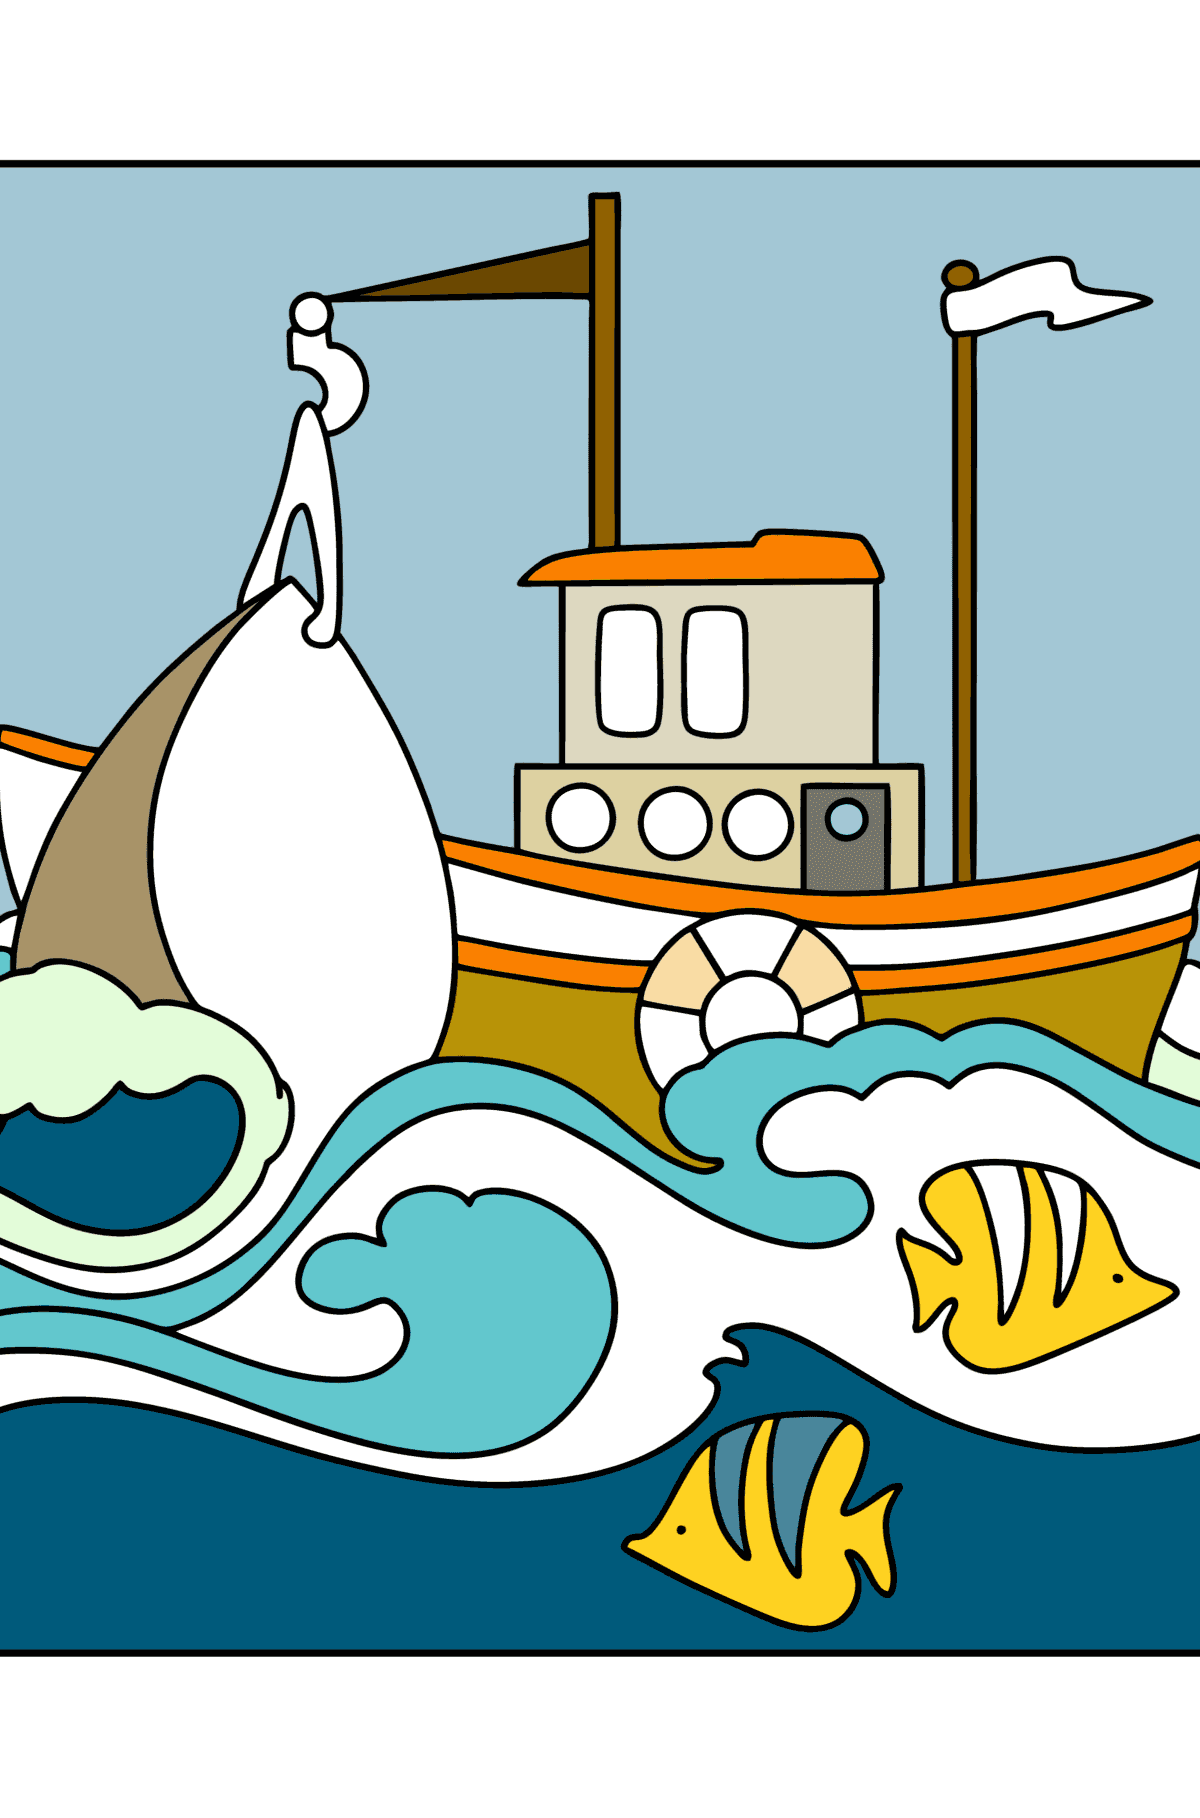 Раскраска Корабль в море - Картинки для Детей